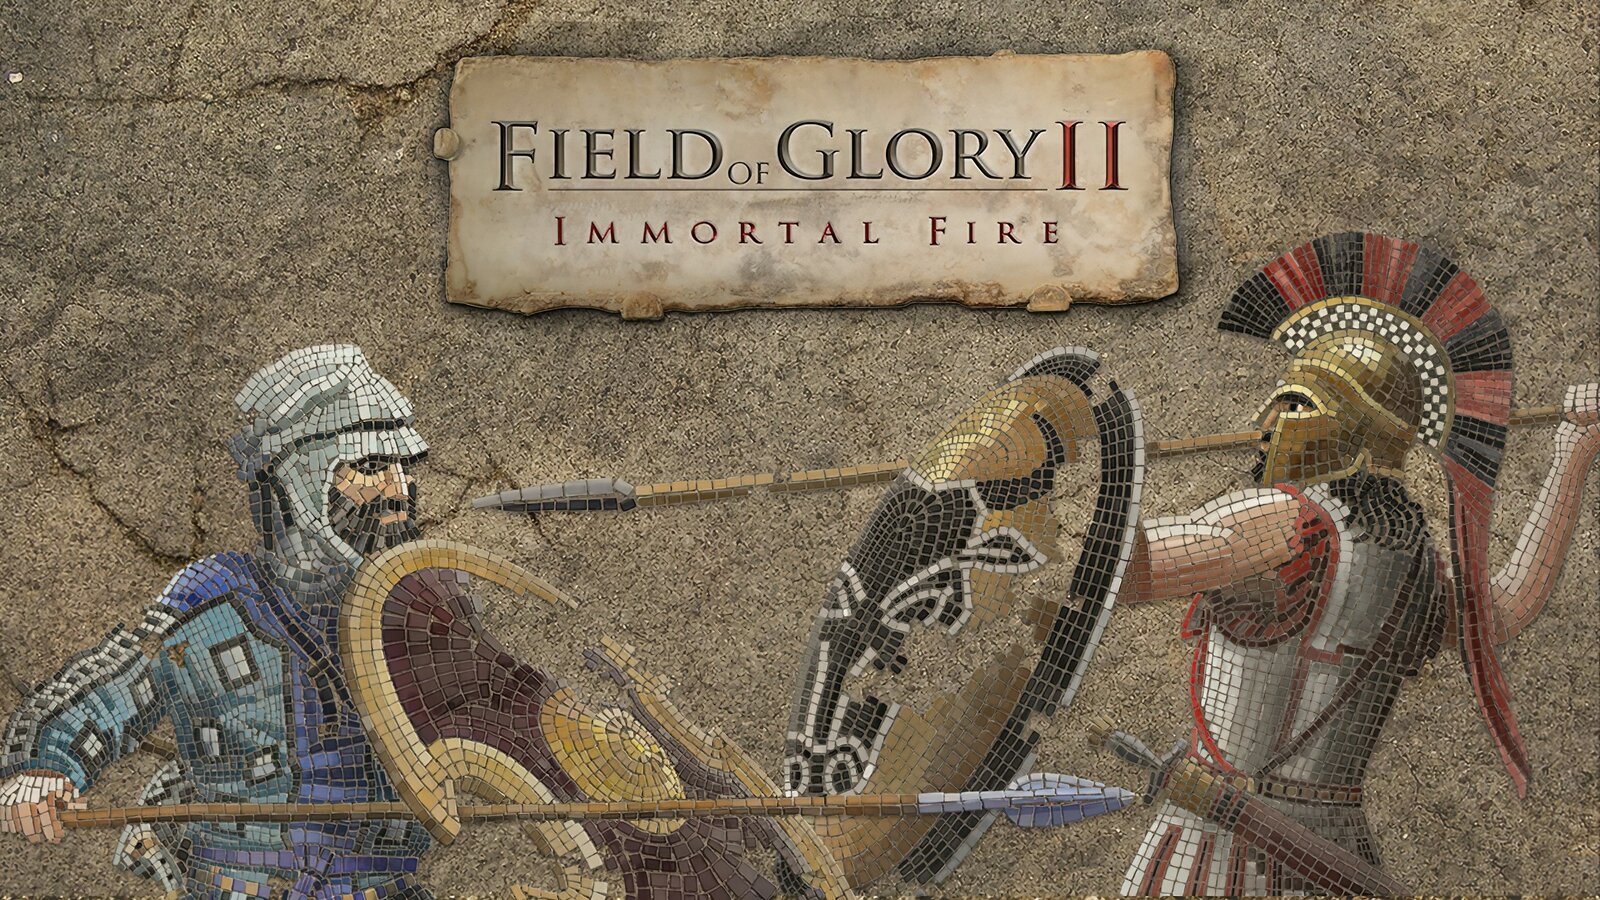 Field of Glory II - Immortal Fire